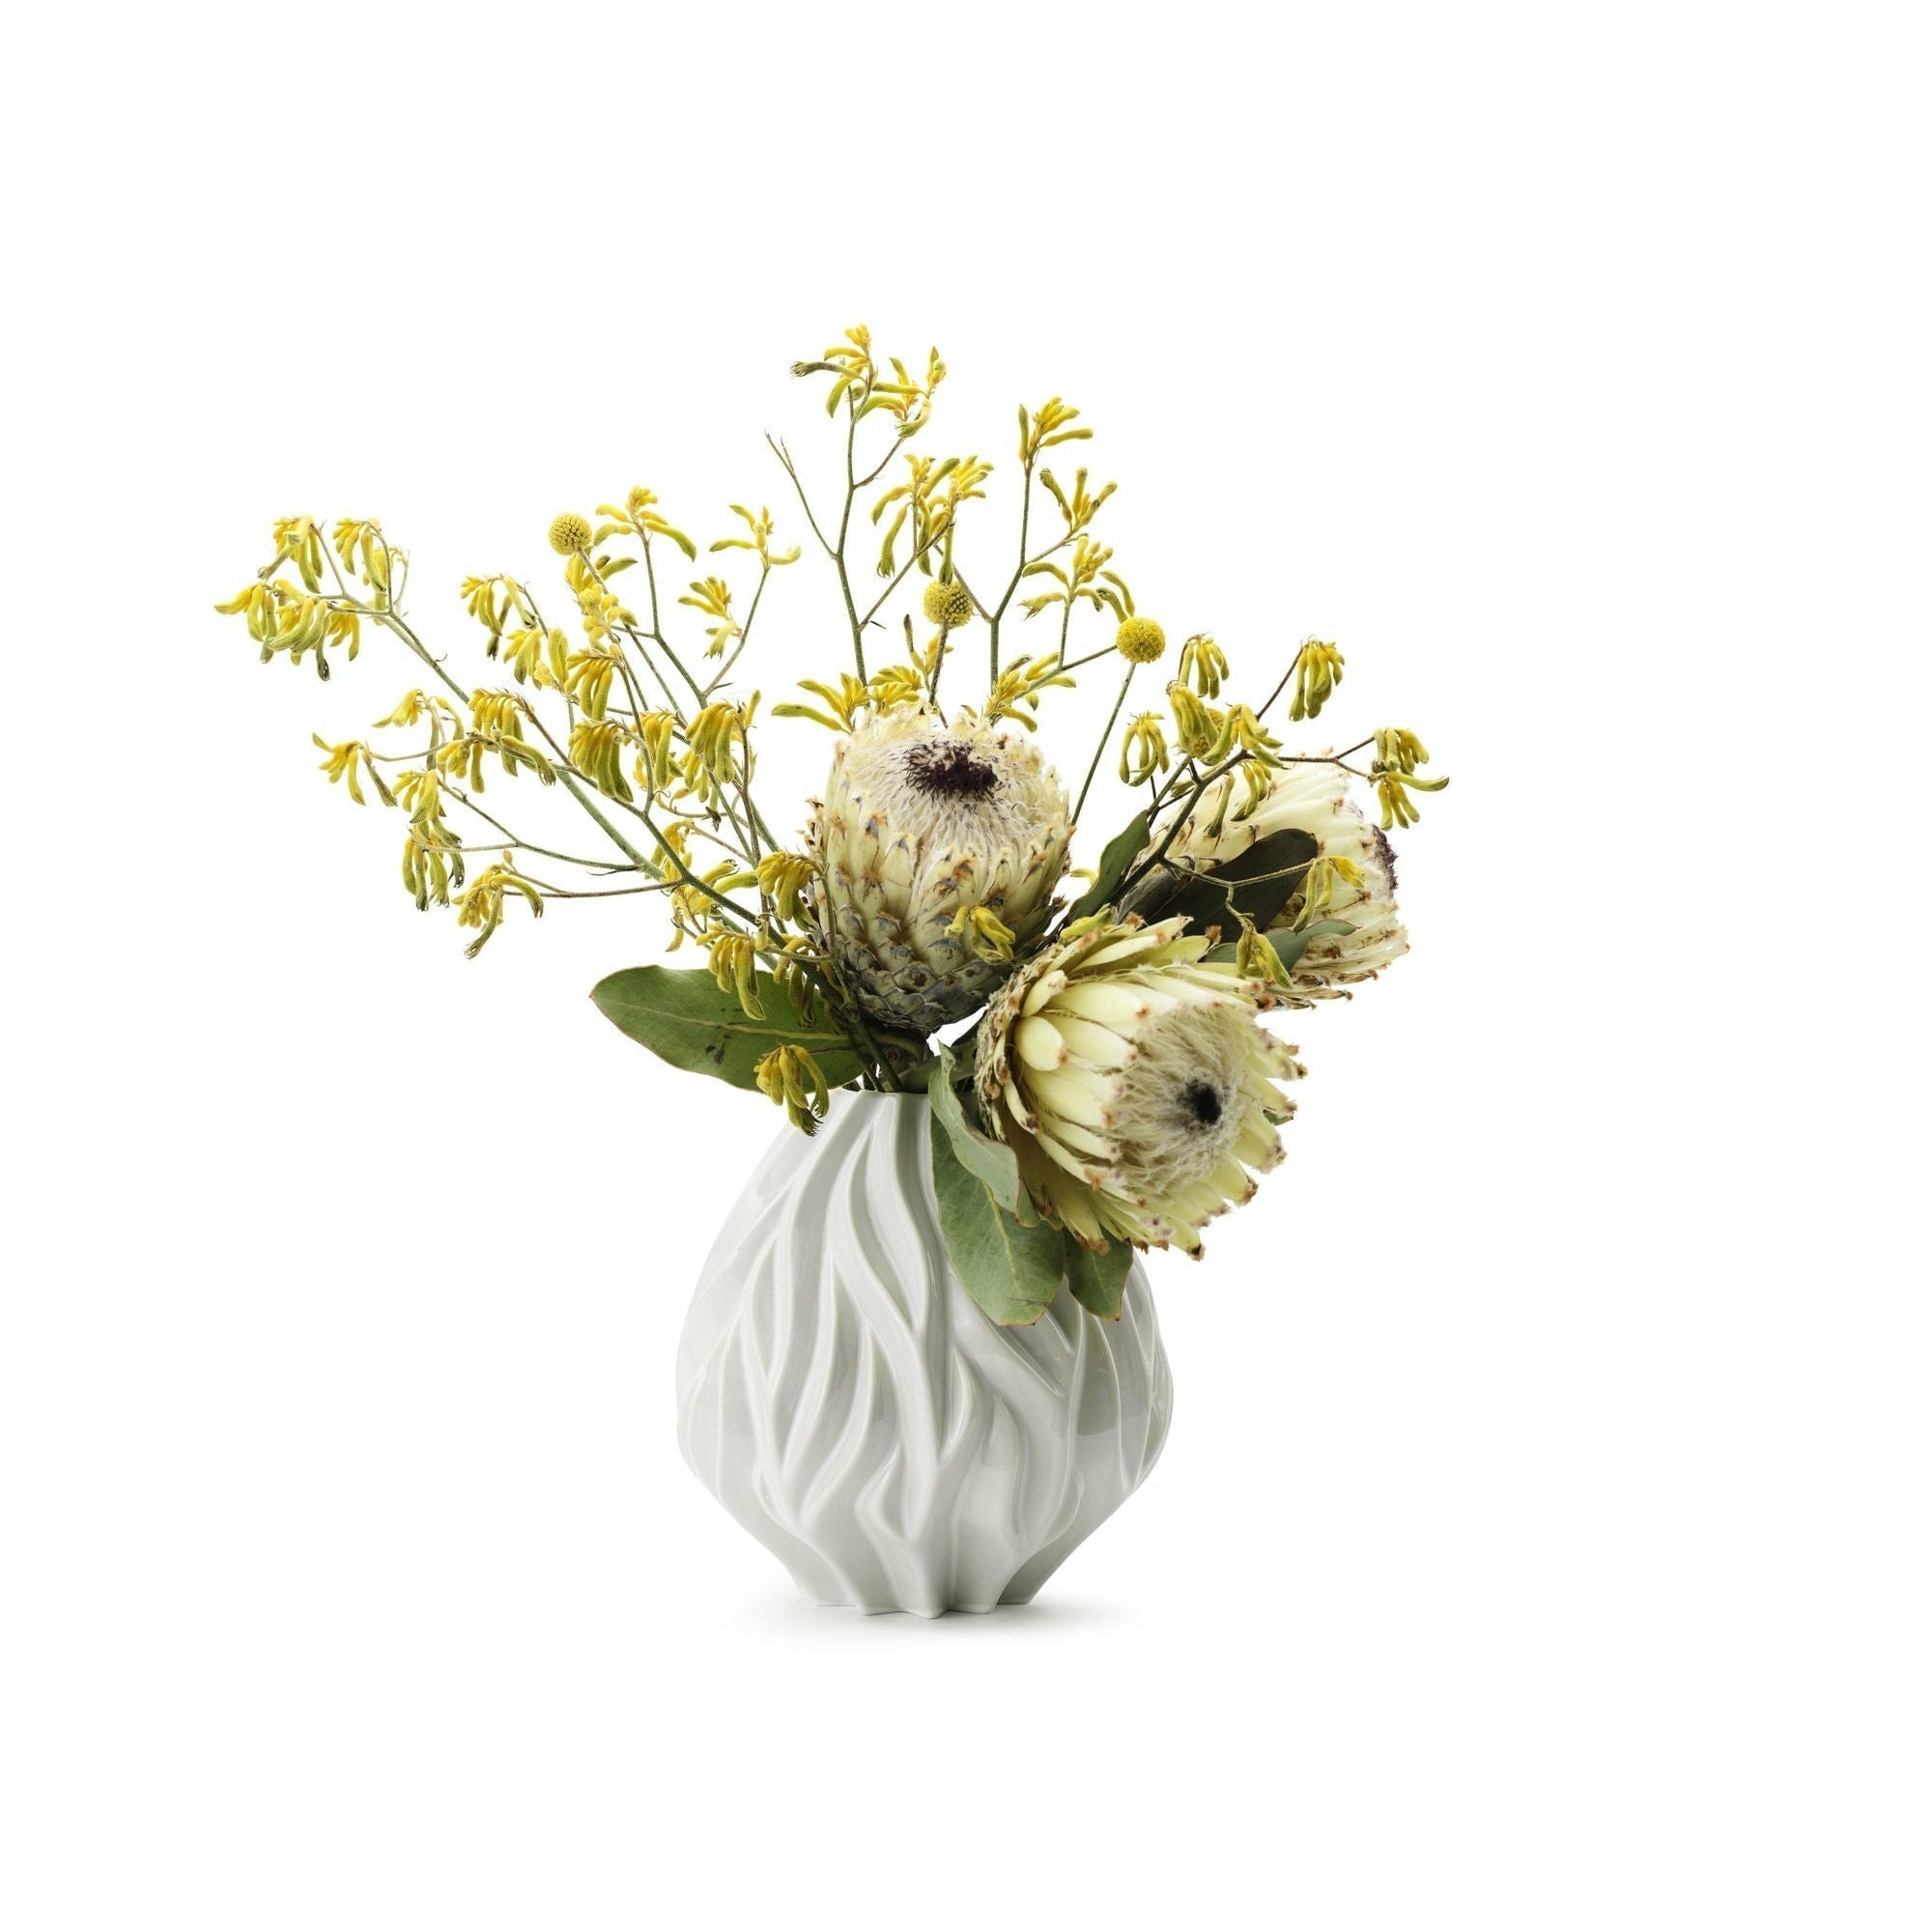 Morsø Vase à flamme blanc, 23 cm